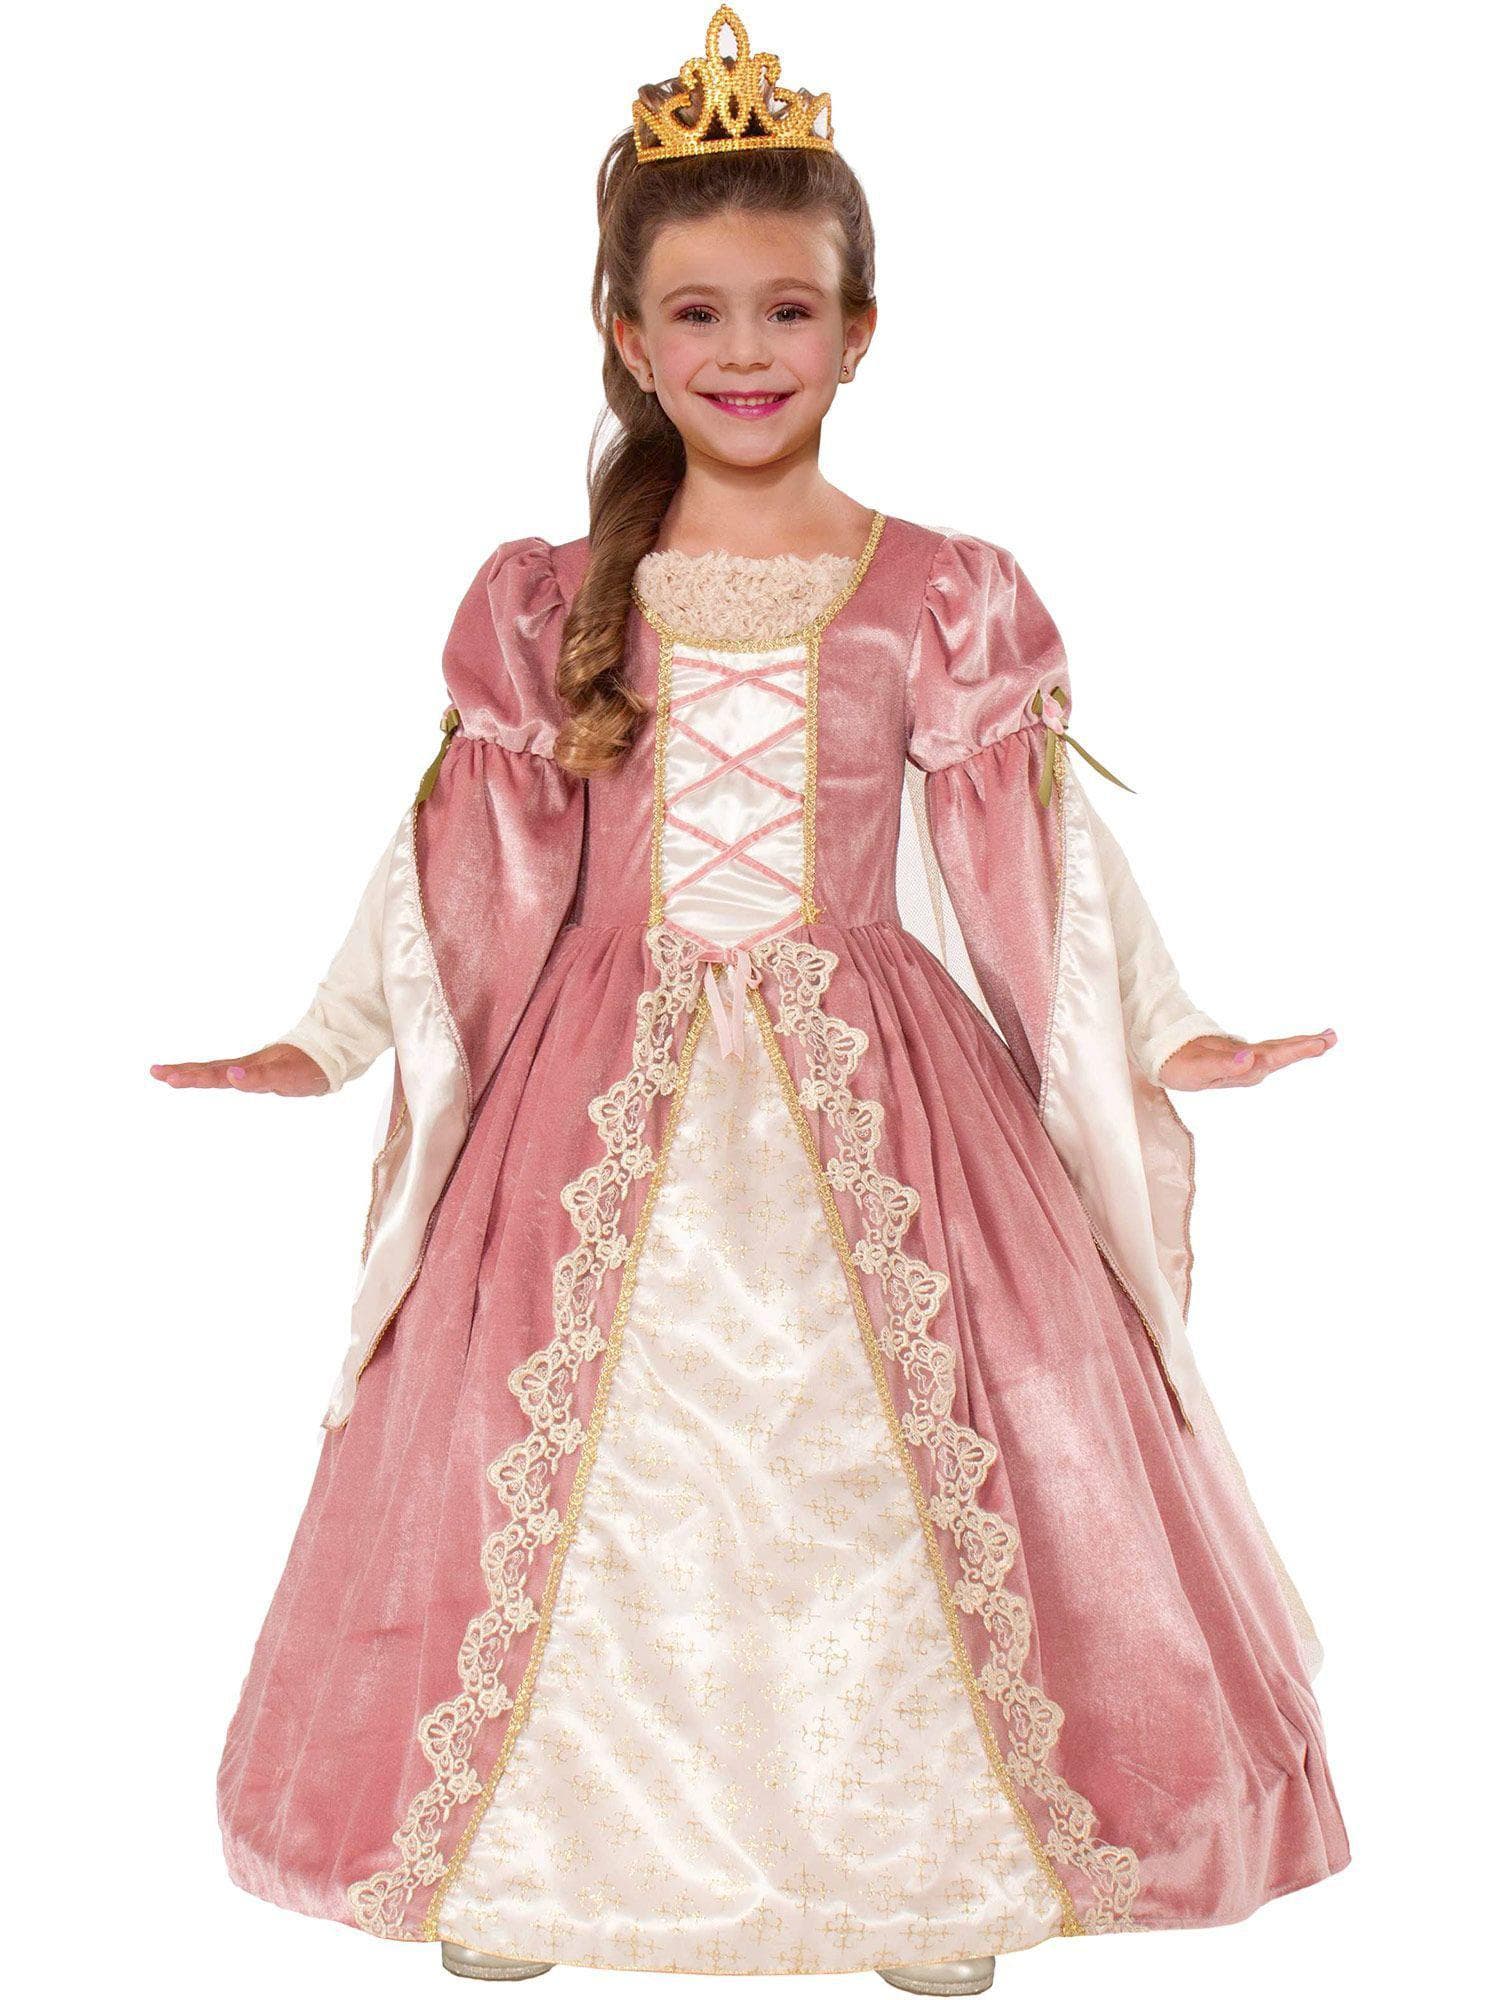 Kid's Victorian Rose Costume - costumes.com